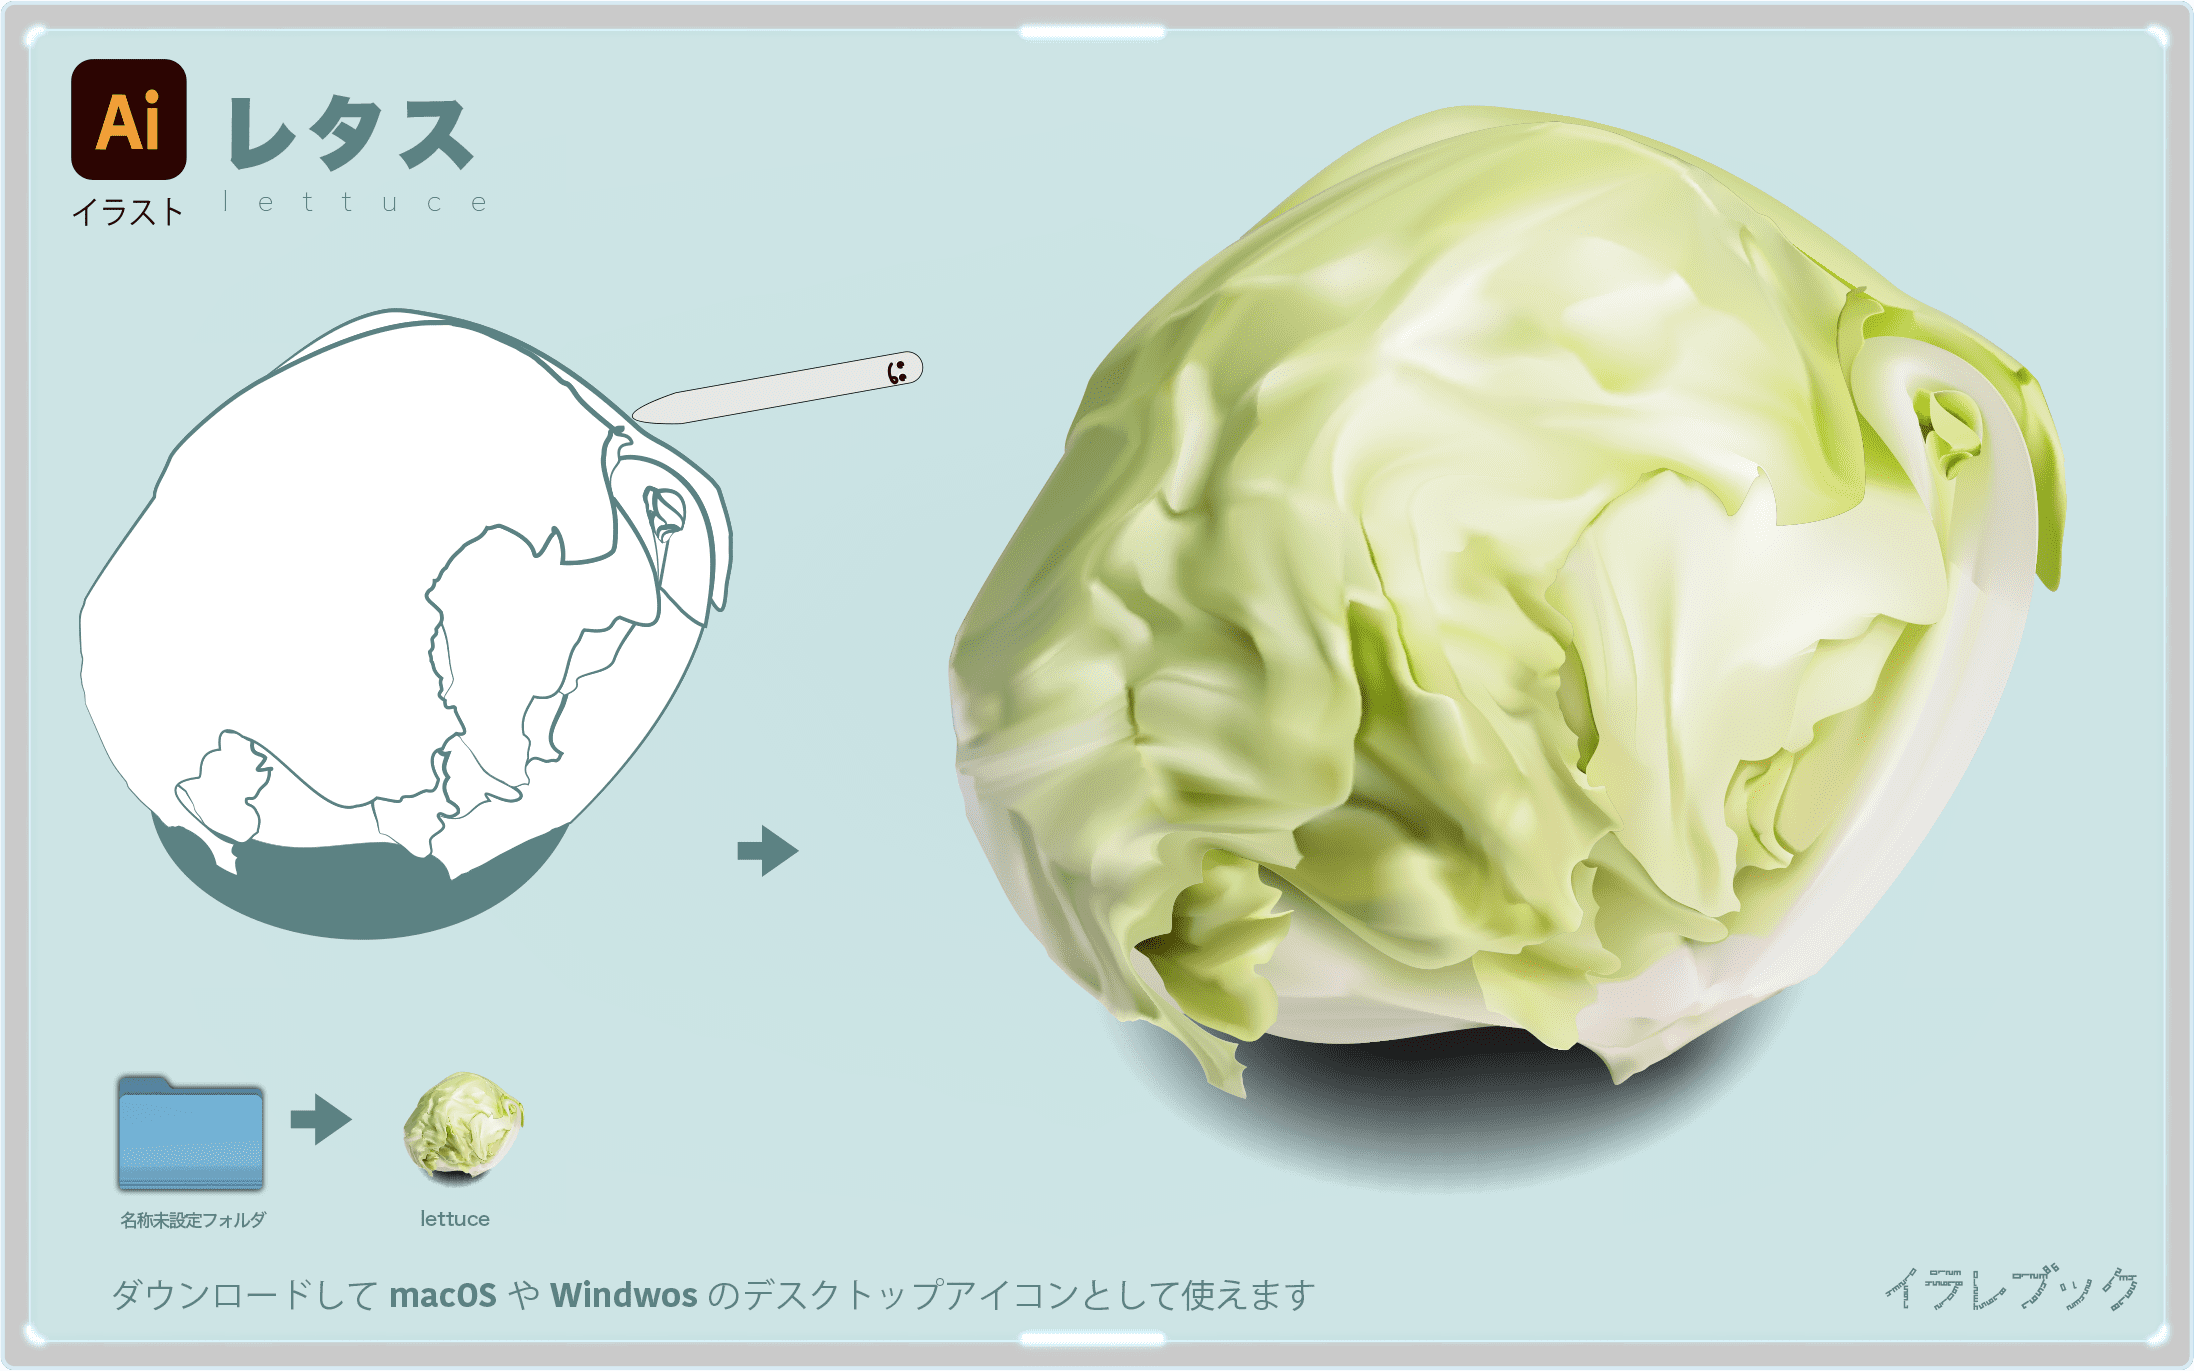 レタス 栄養や保存選び方と人気レシピ チャーハンサラダレタスクラブ Lettuce